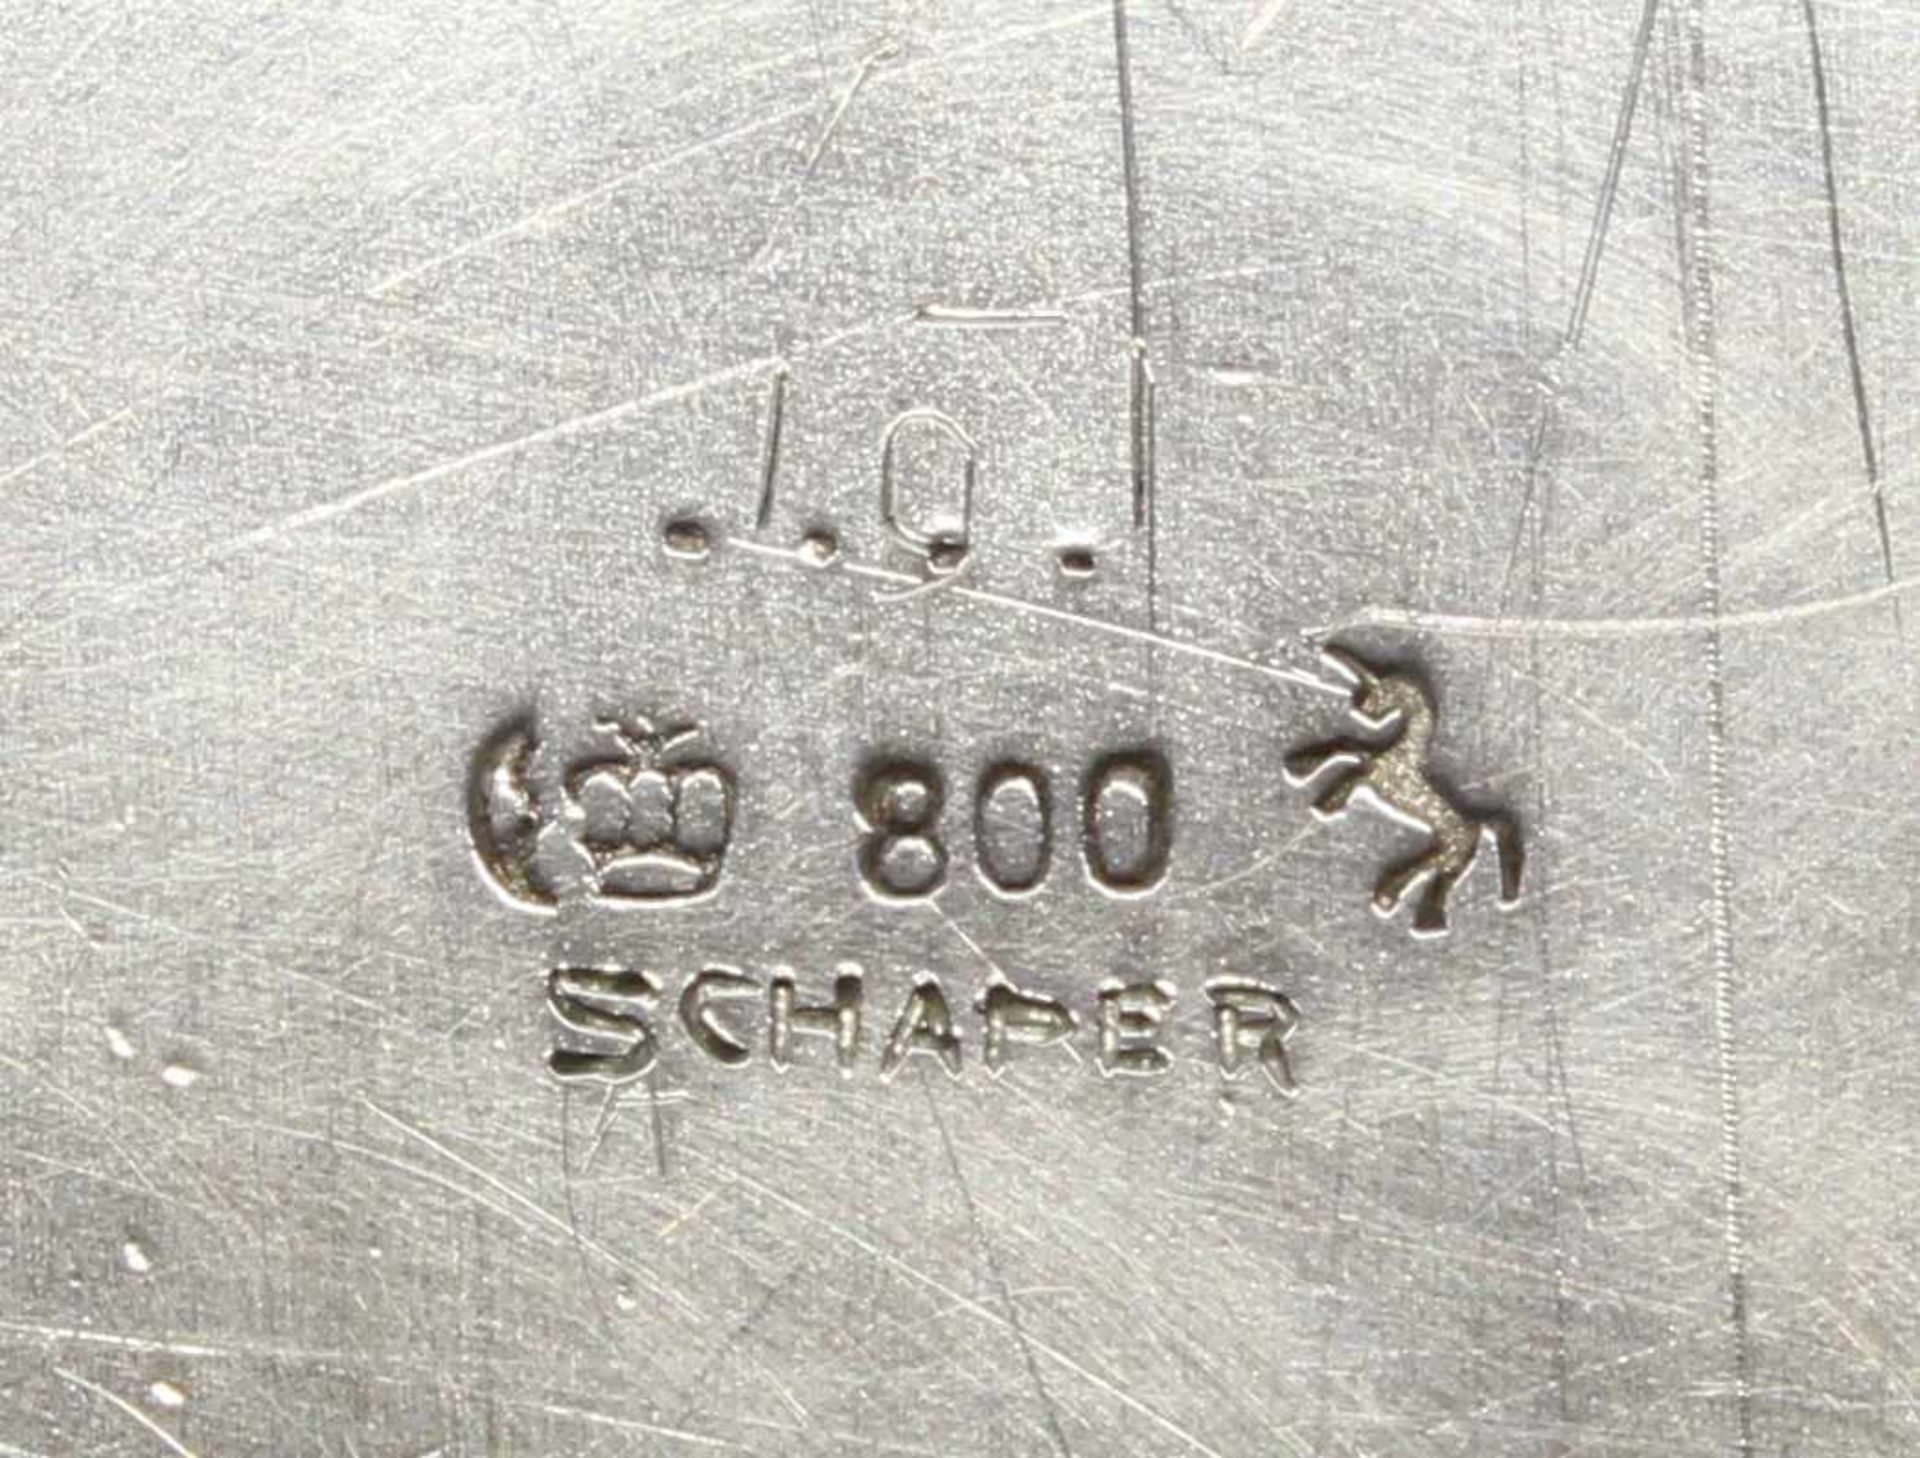 Vorlegeplatte, Silber 800, Gbr. Kühn, oval, passig-geschweifter Profilrand, umseitig datierte - Image 4 of 4